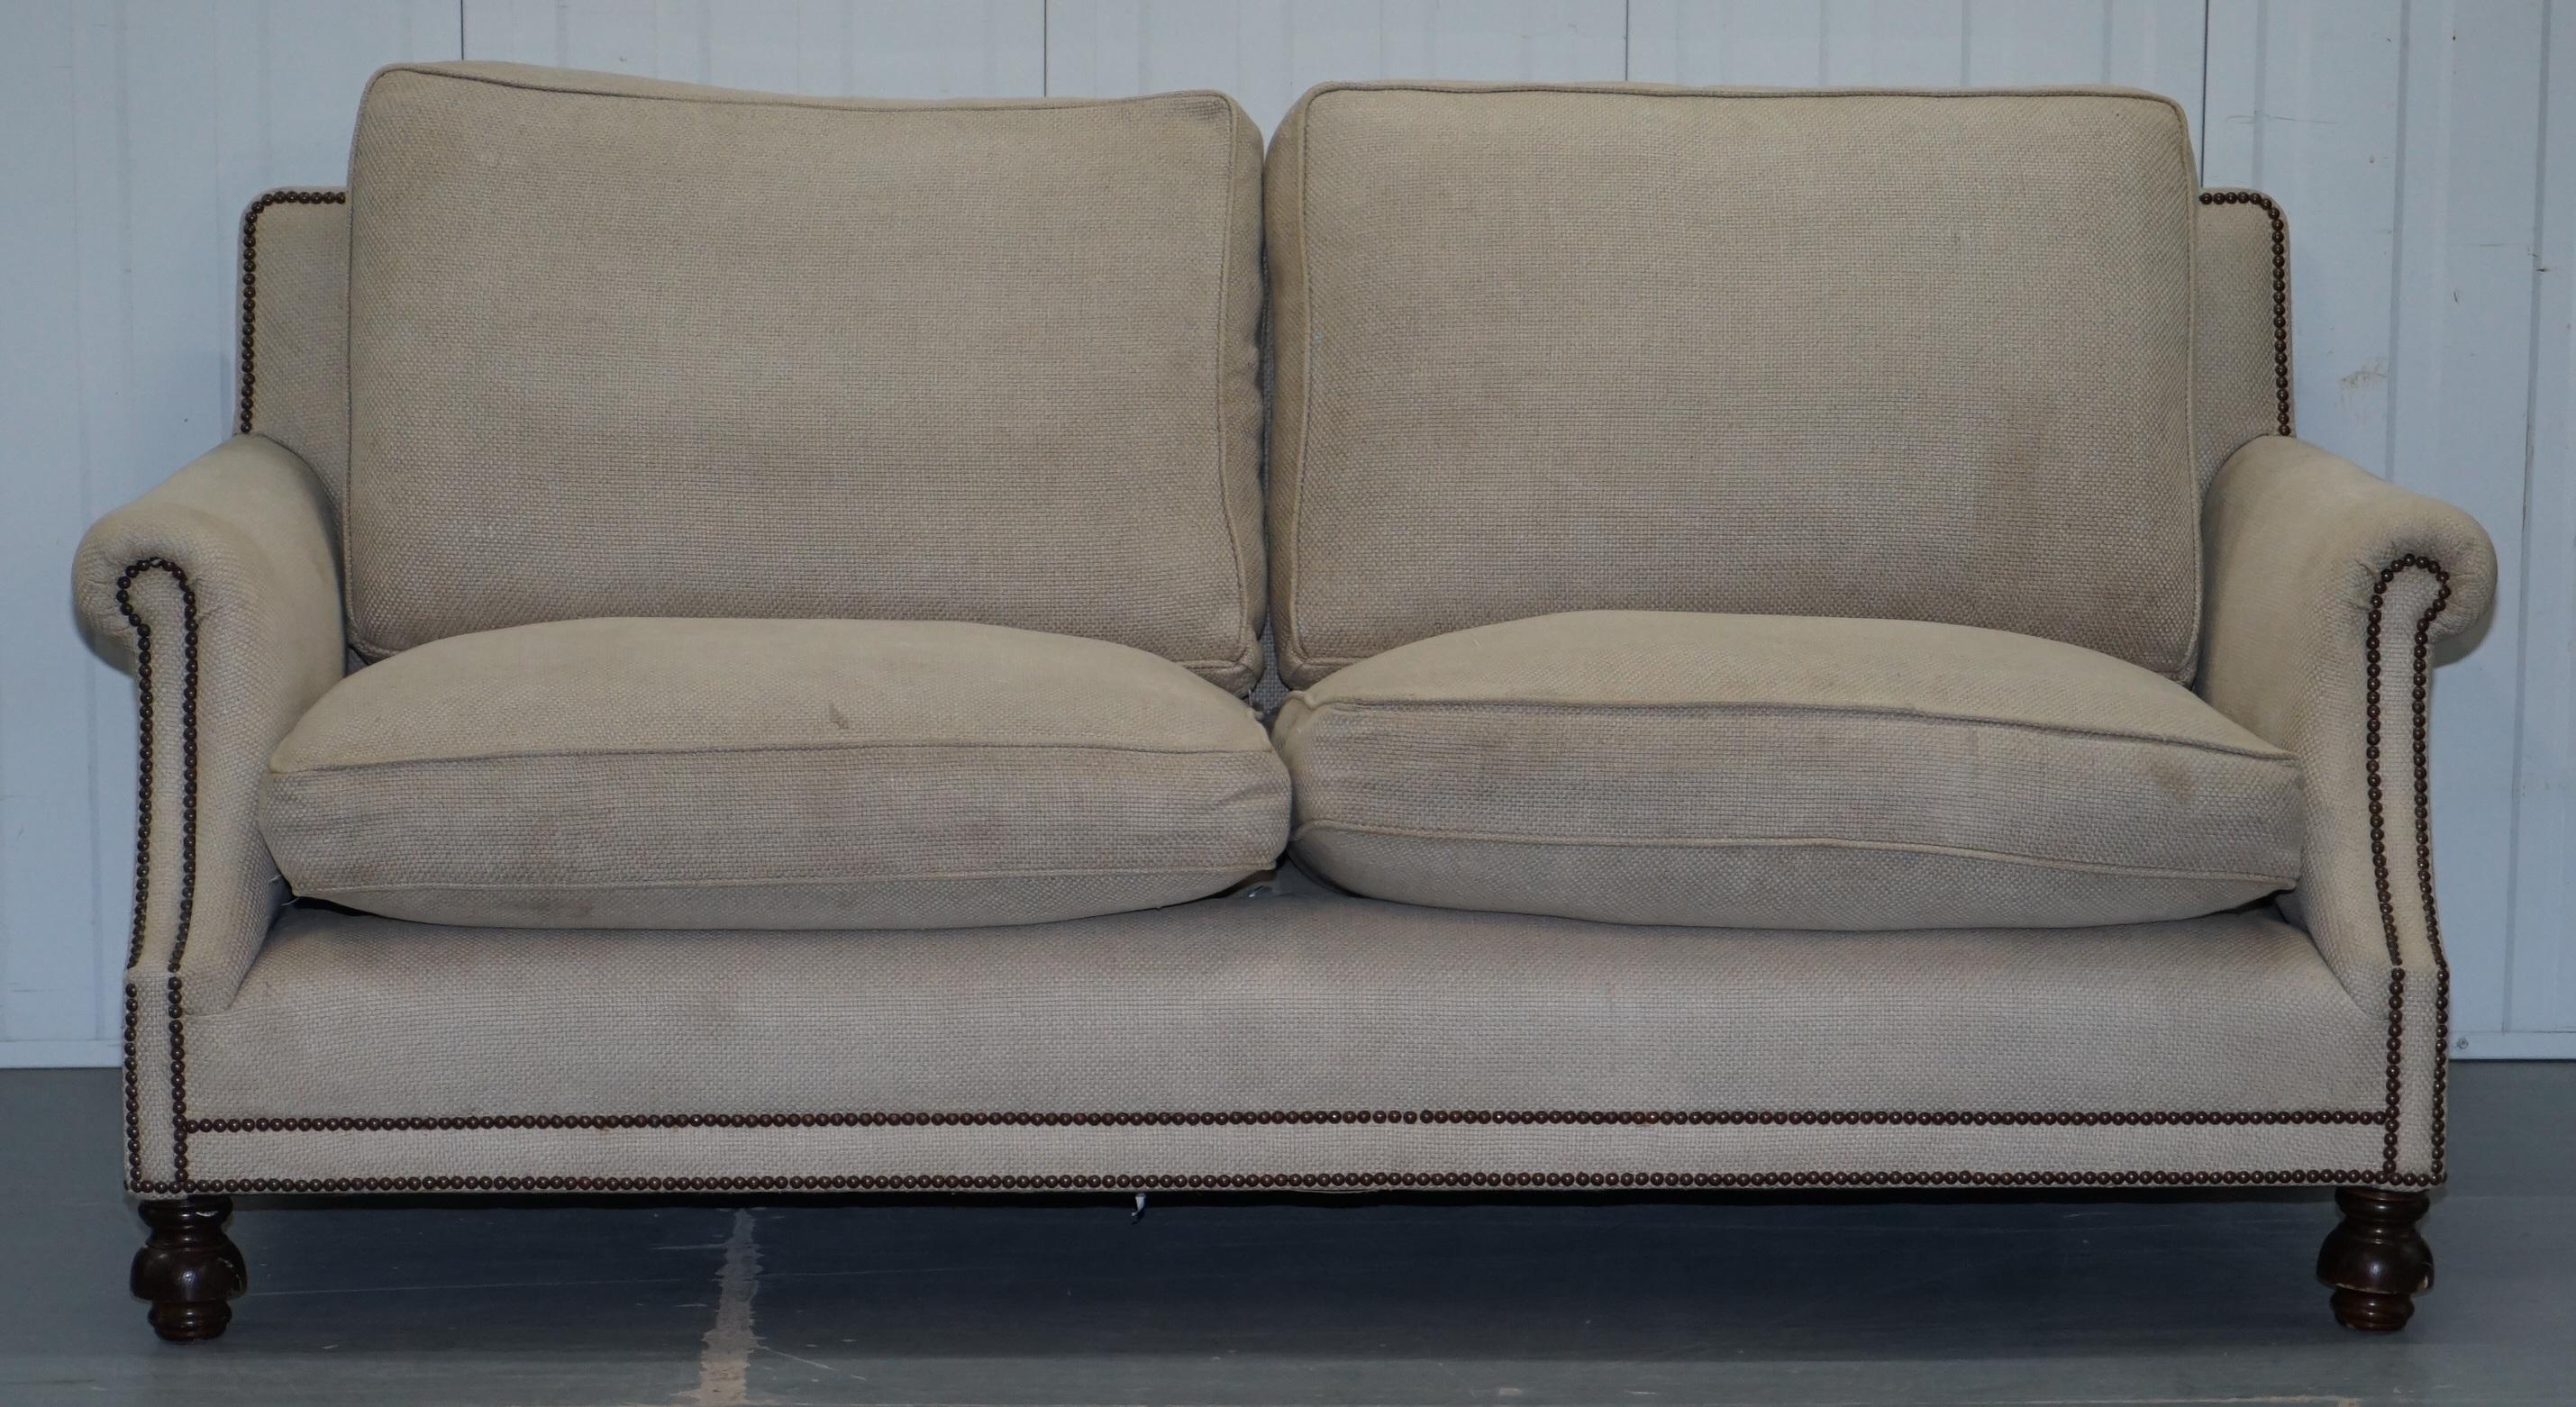 Wimbledon-Möbel

Wimbledon-Furniture freut sich:: dieses George Smith Chelsea Arran Sofa mit federgefüllten Kissen zum Verkauf anbieten zu können

Bitte beachten Sie:: dass die angegebene Liefergebühr nur ein Richtwert ist und nur innerhalb der M25